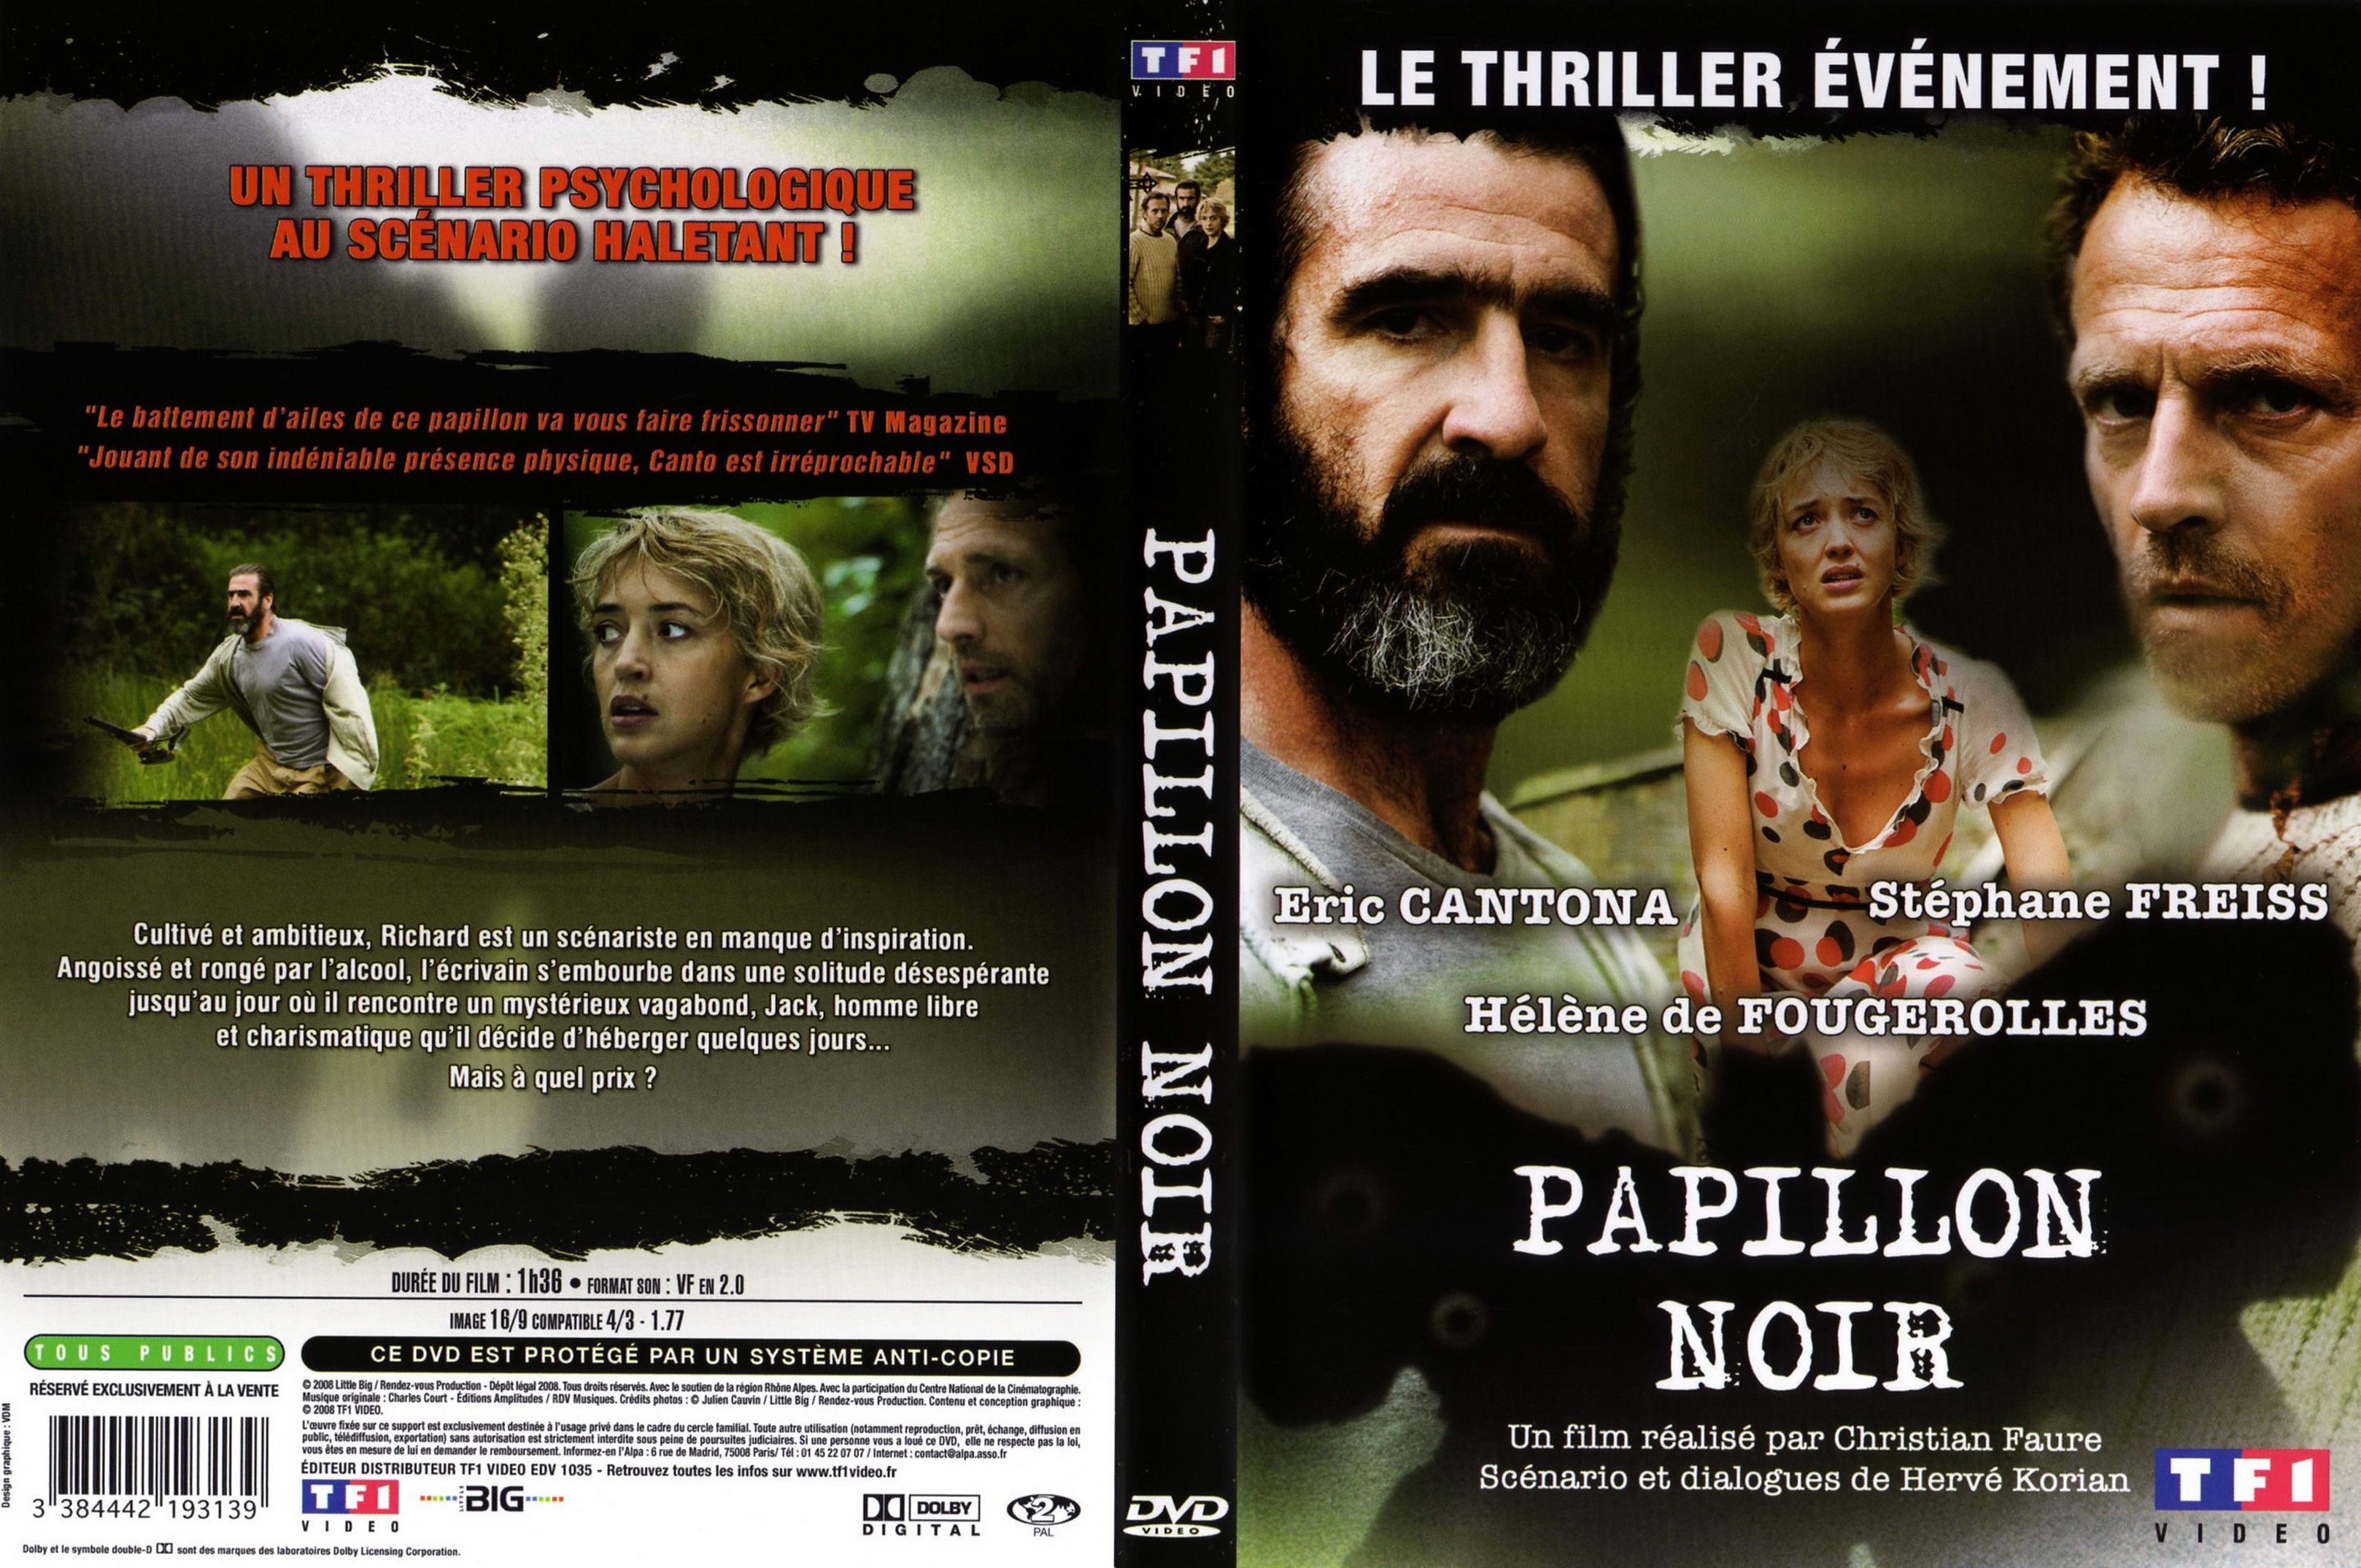 Jaquette DVD Papillon noir